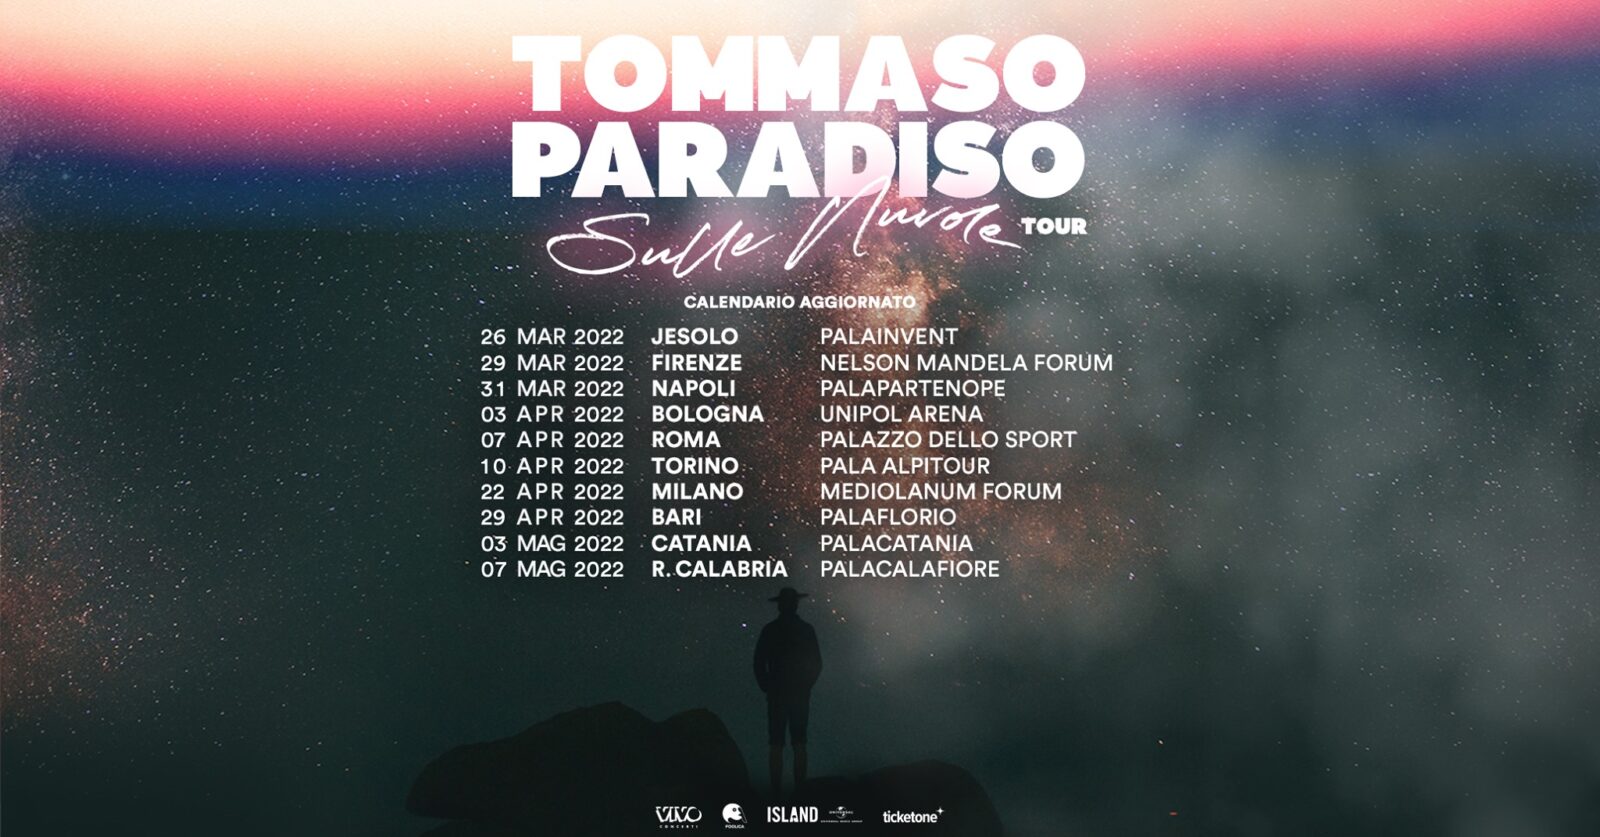 Tommaso Paradiso : RINVIATO IL TOUR AL 2022